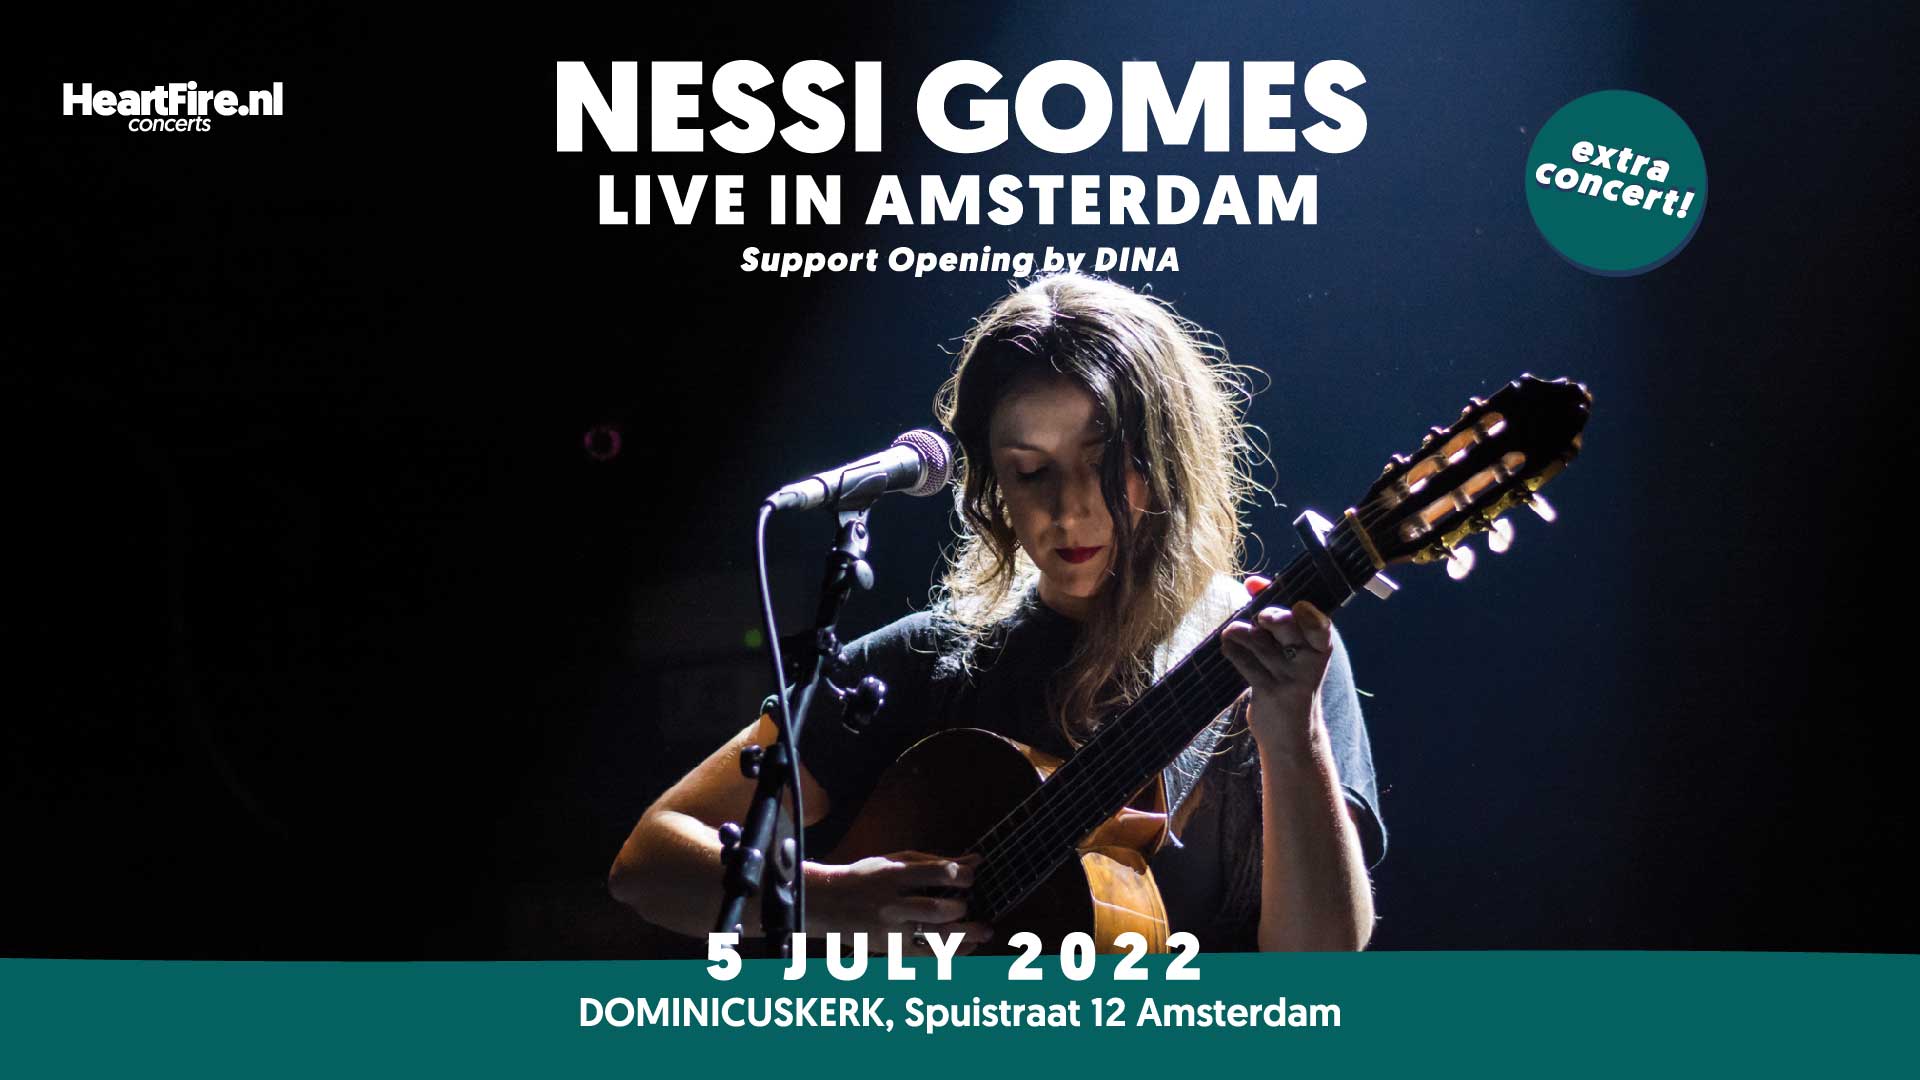 Nessi Gomes 5 July 2022 HeartFire.nl